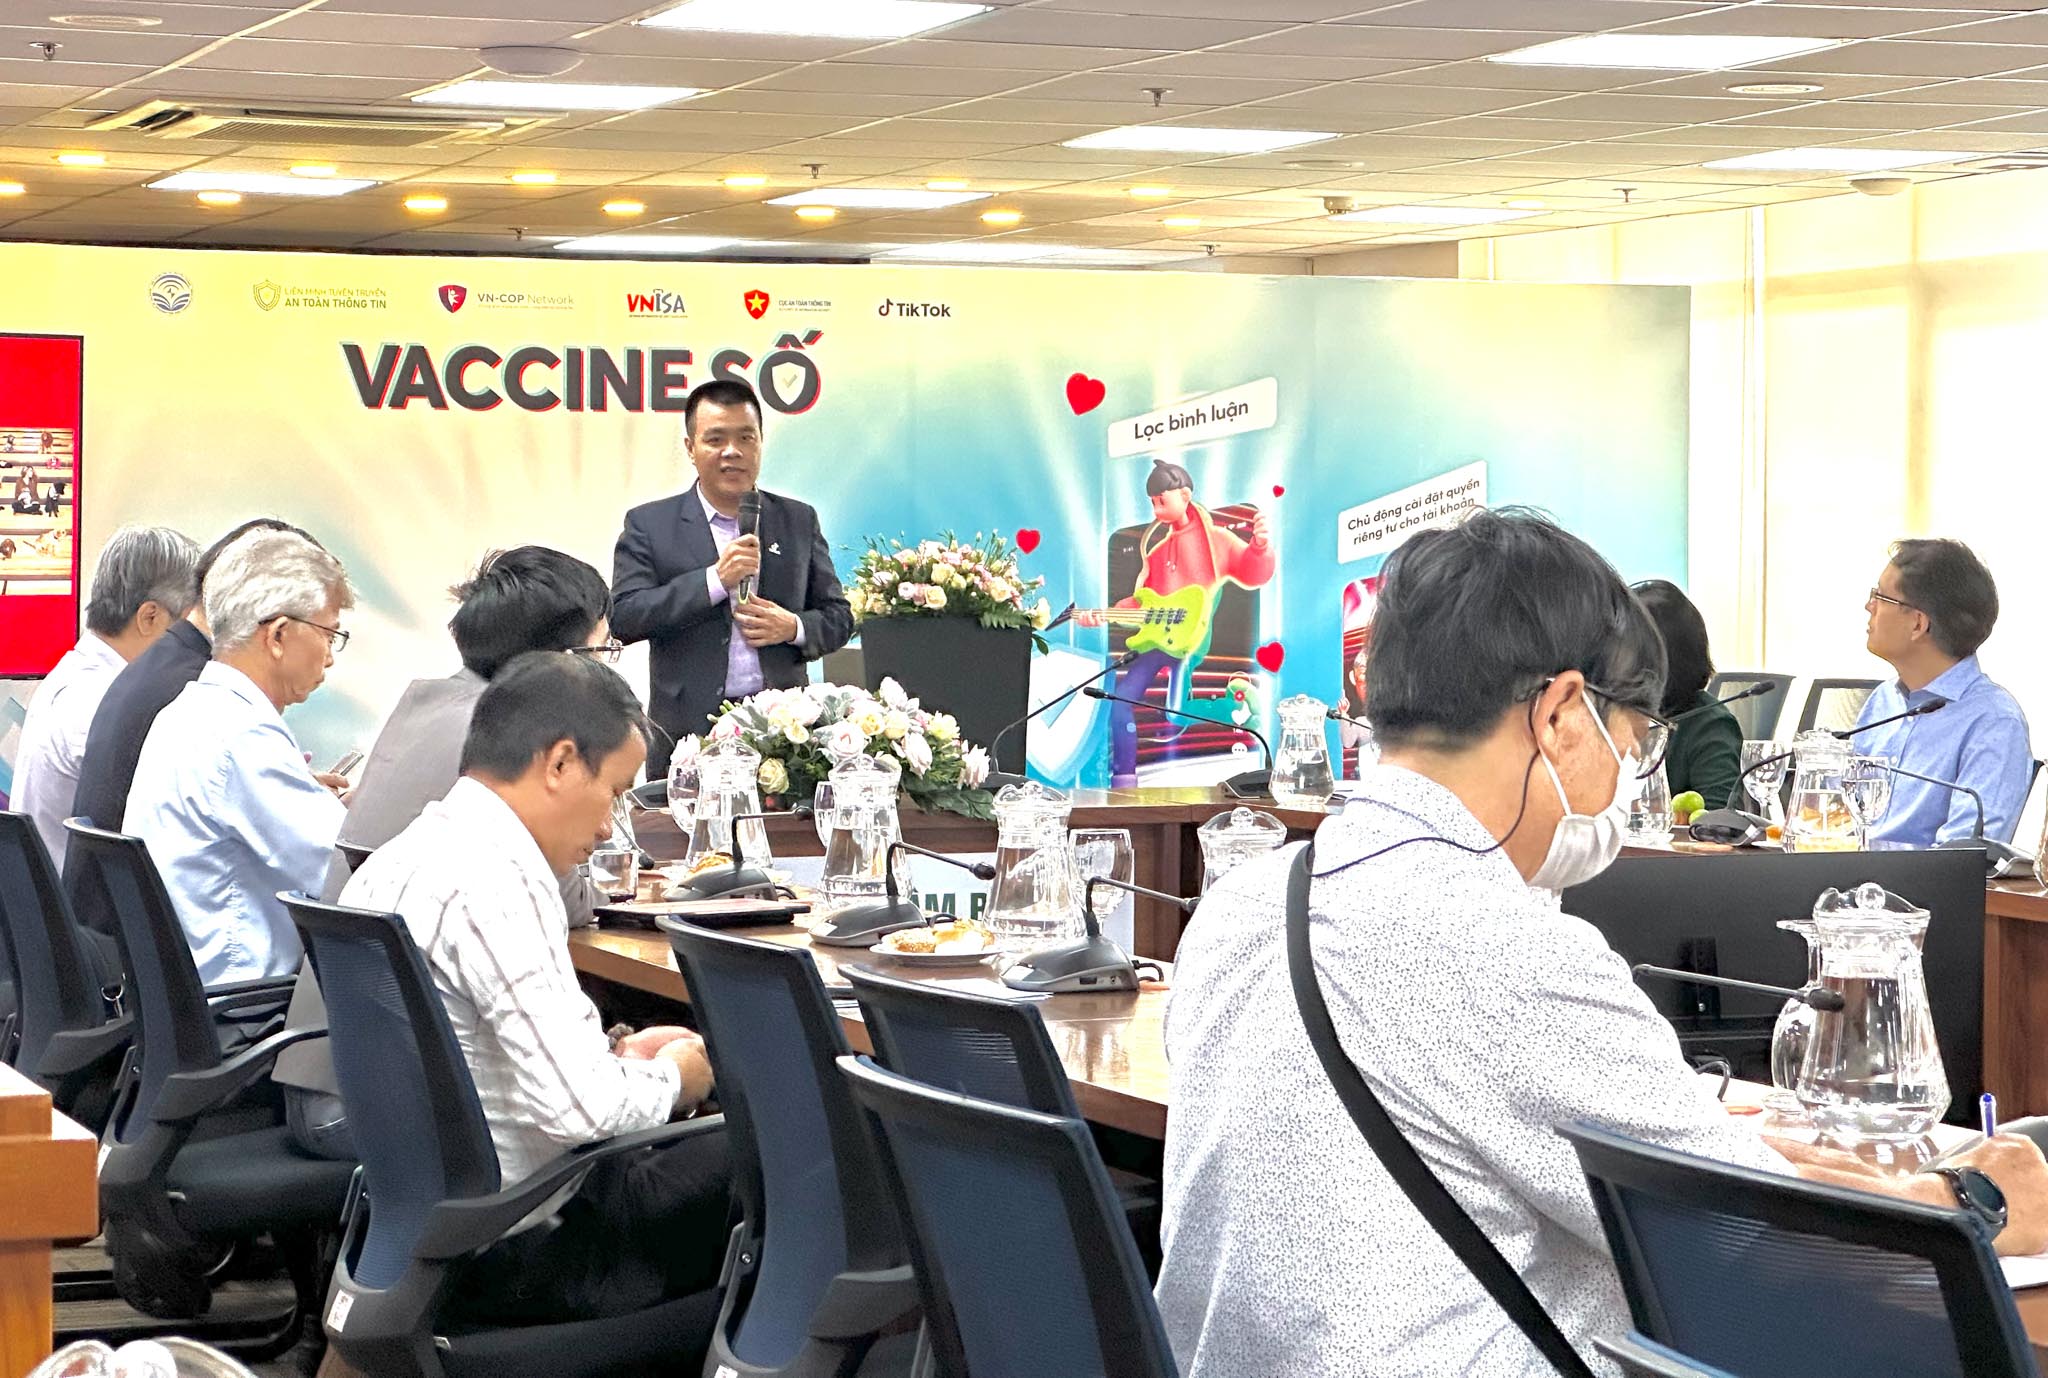 TikTok tái khởi động Chiến dịch #VaccineSo, chung tay nâng cao nhận thức cộng đồng về an toàn kỹ thuật số